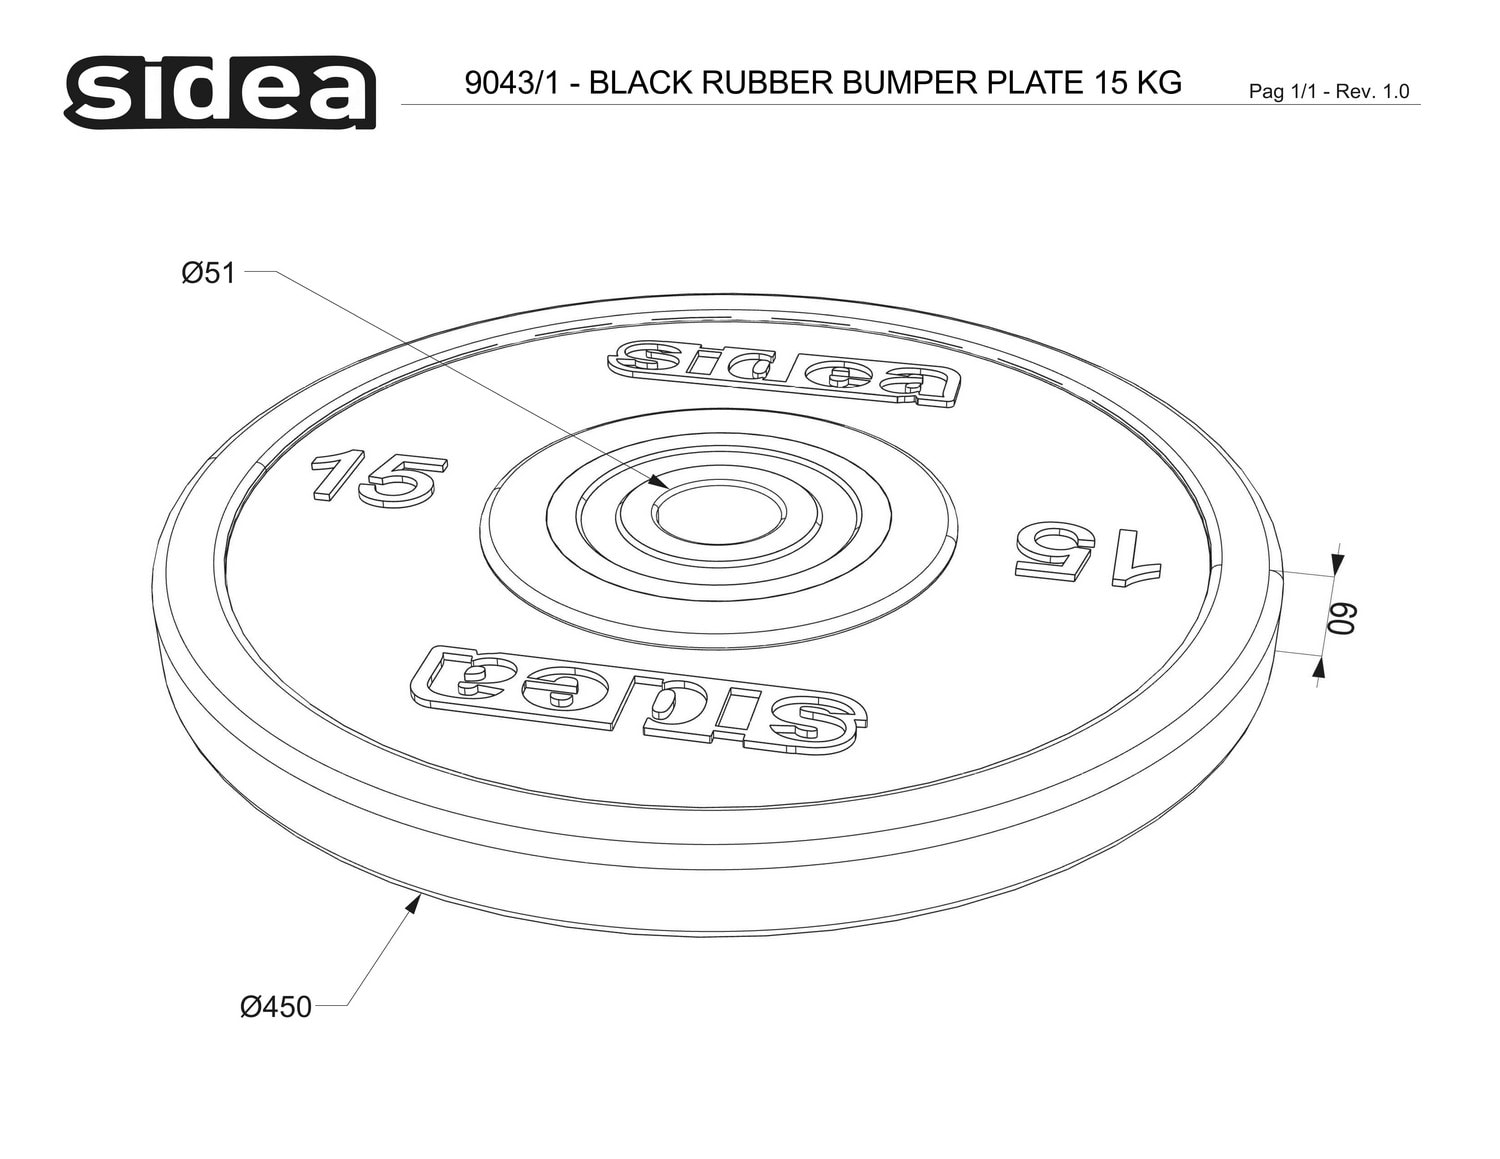 9040/1-9044/1 Black Rubber Bumper Plate - Piastre in gomma